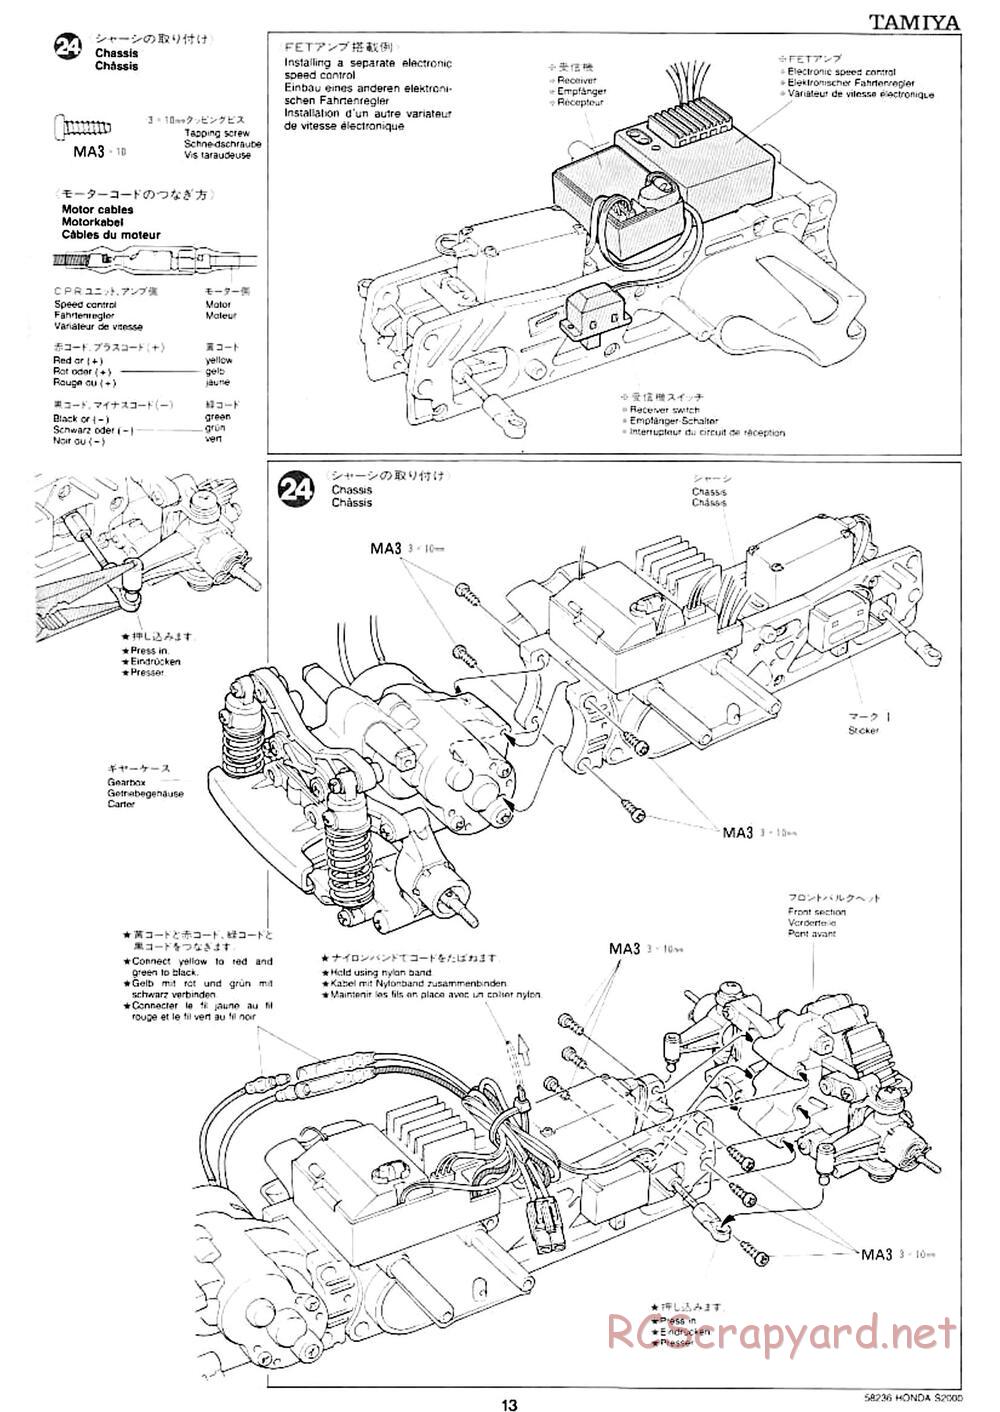 Tamiya - Honda S2000 - M04L Chassis - Manual - Page 11